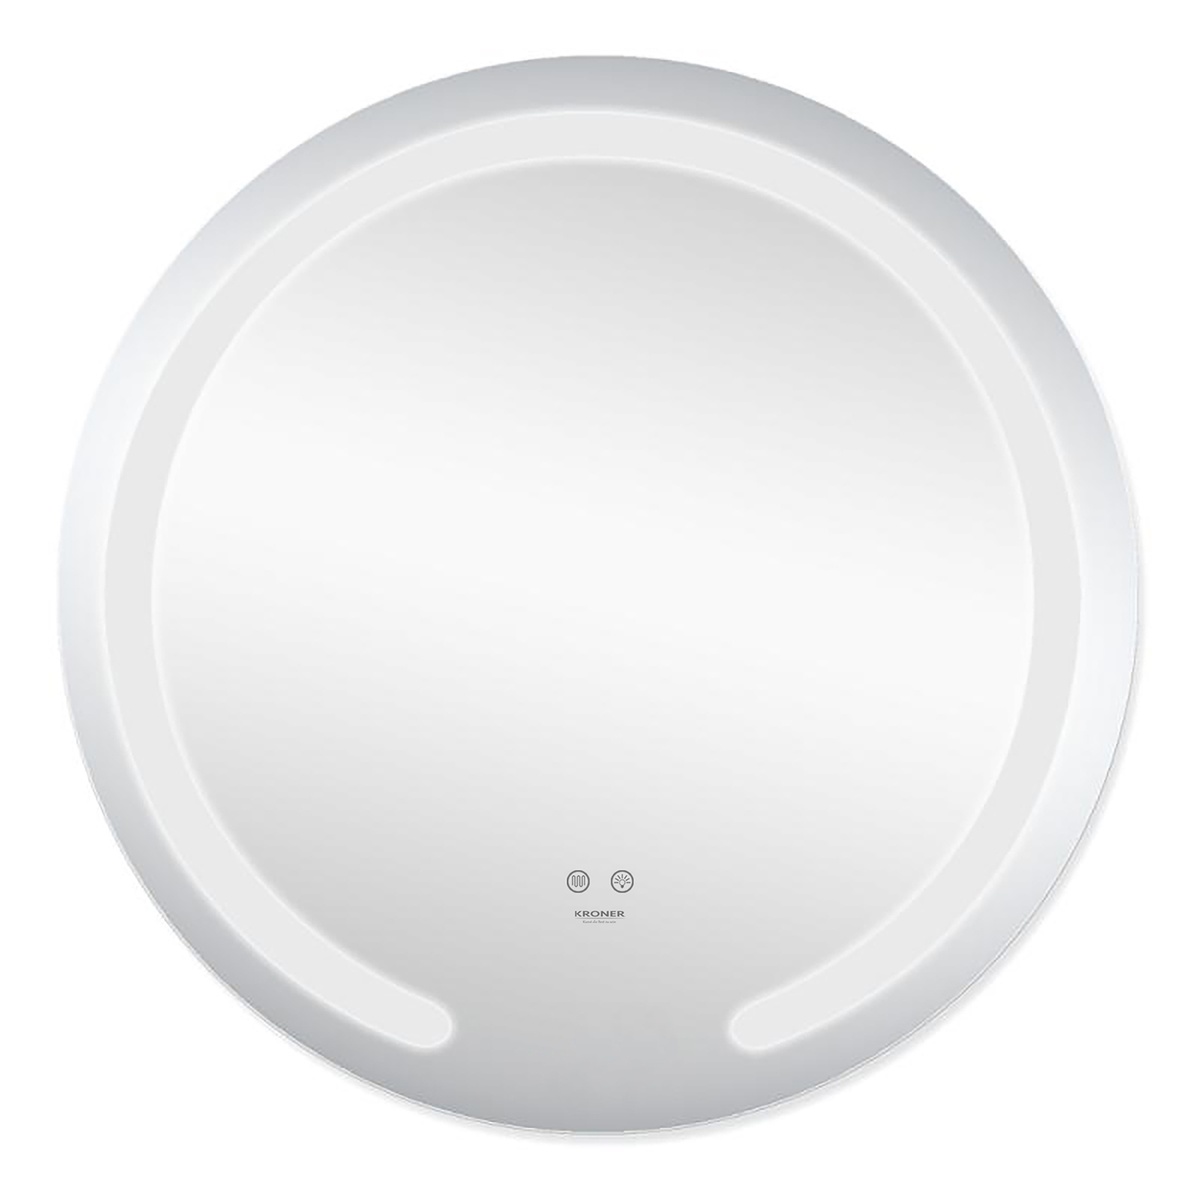 Зеркало в ванную KRONER Spiegel 60x60см c подсветкой сенсорное включение антизапотевание круглое CV030041